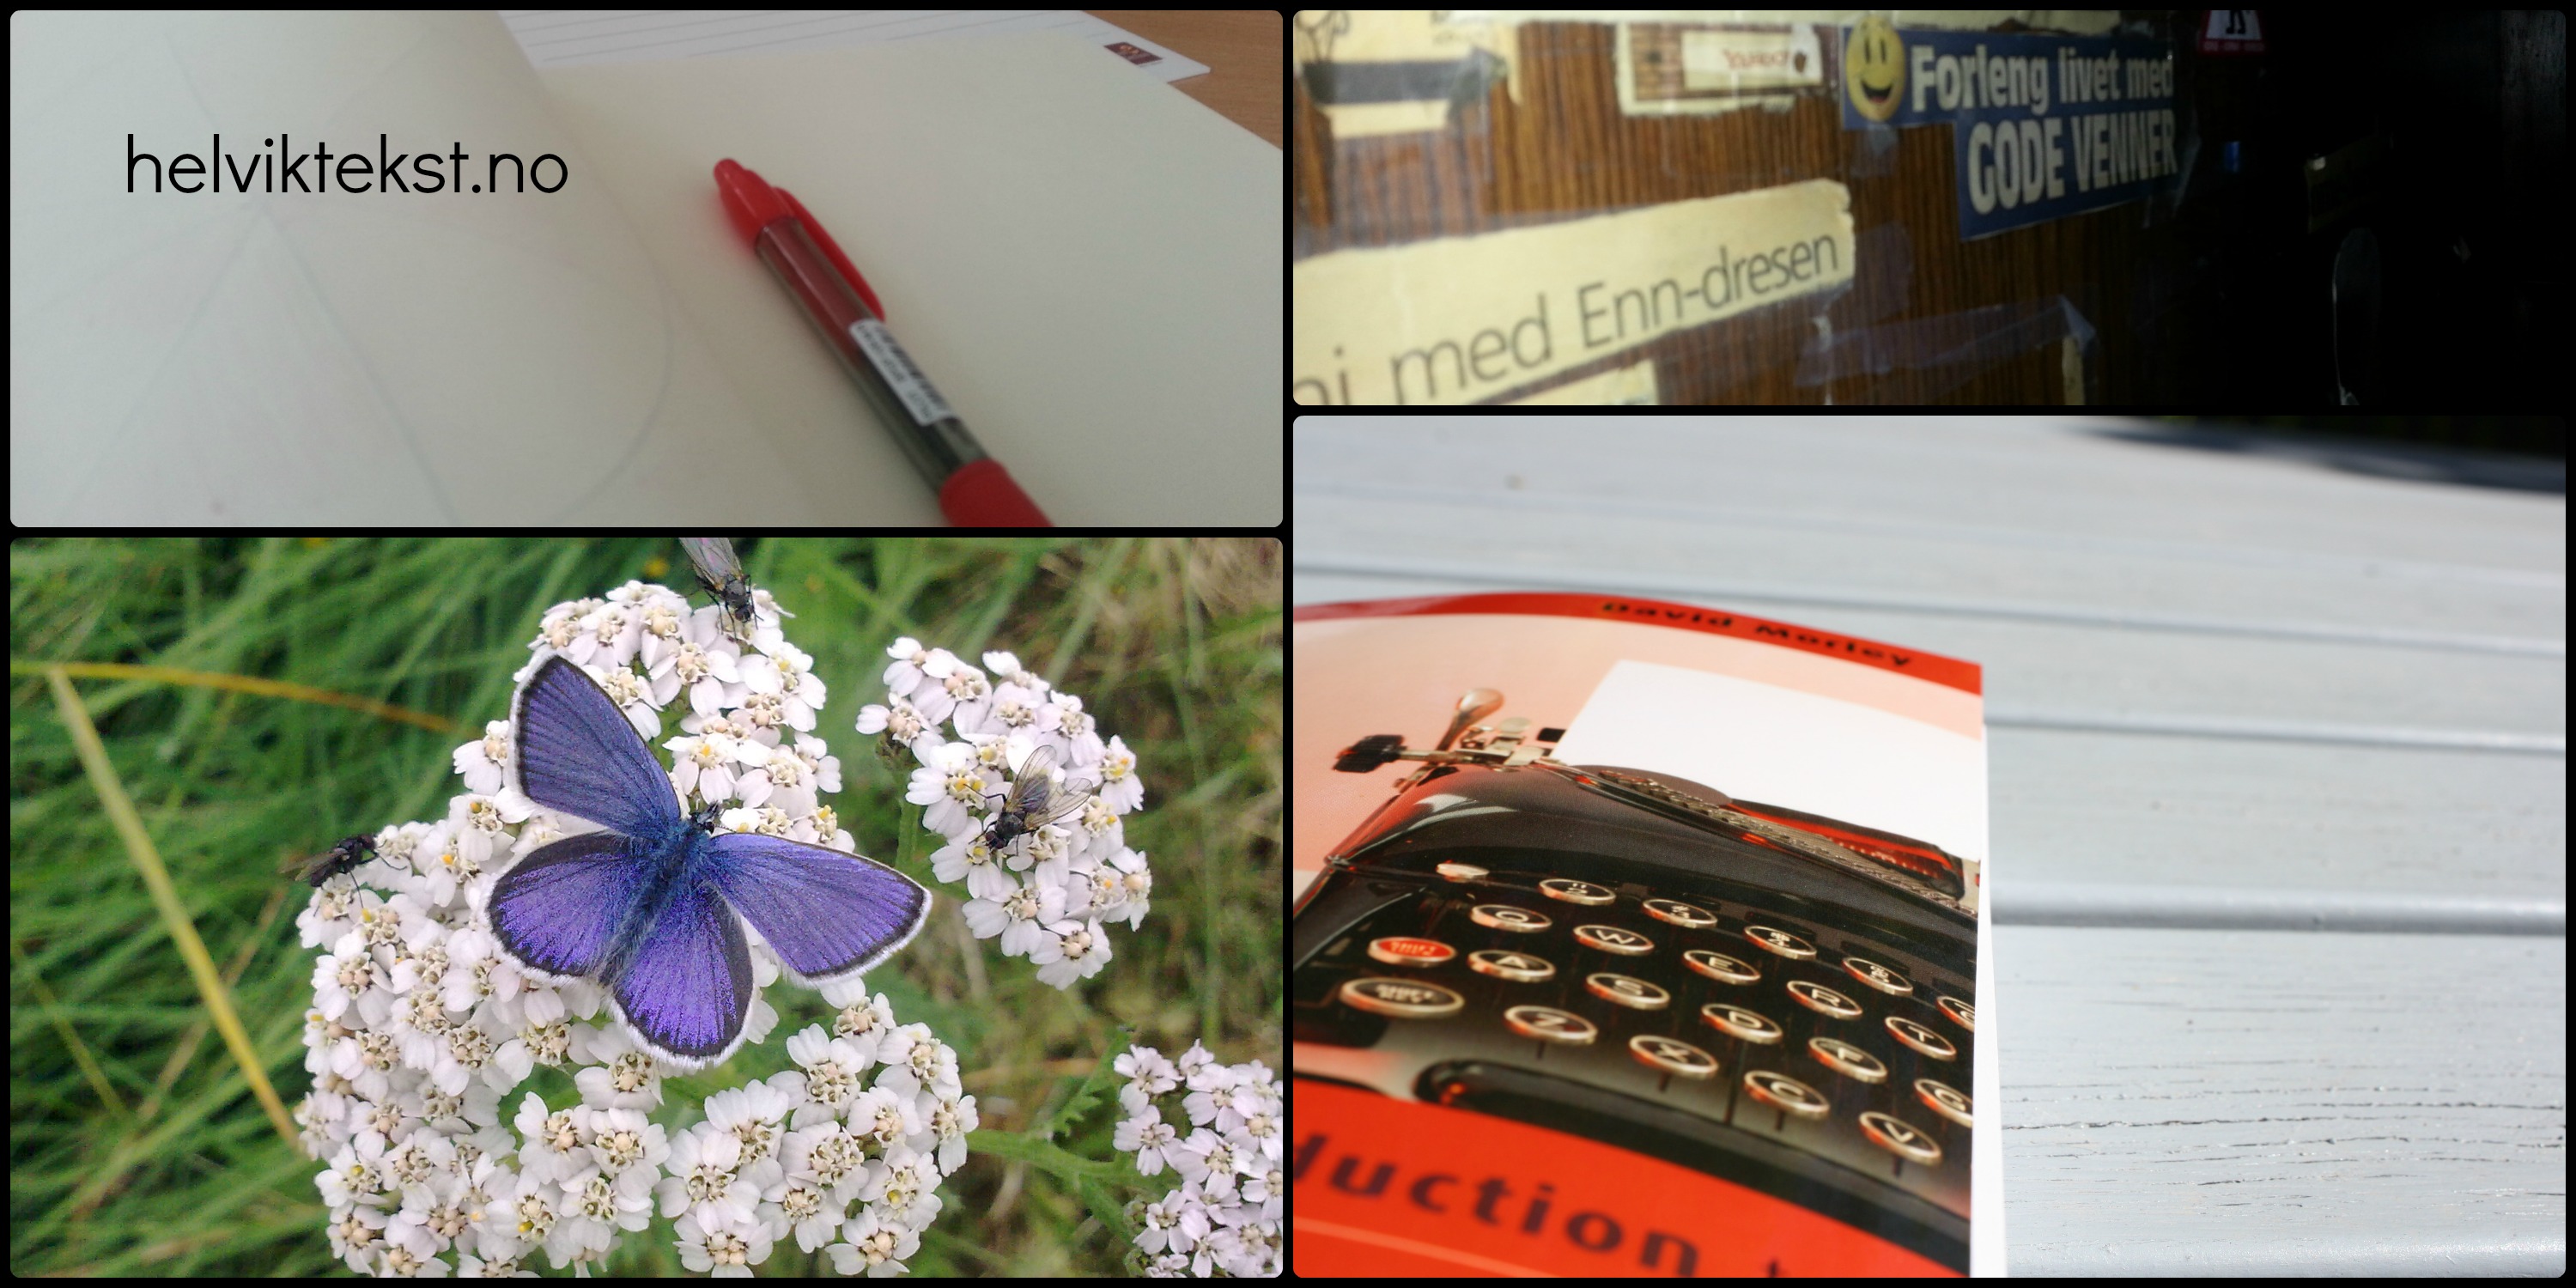 Raud penn, vegg med avisutklypp, sommarfugl og bok med bilete av skrivemaskin.